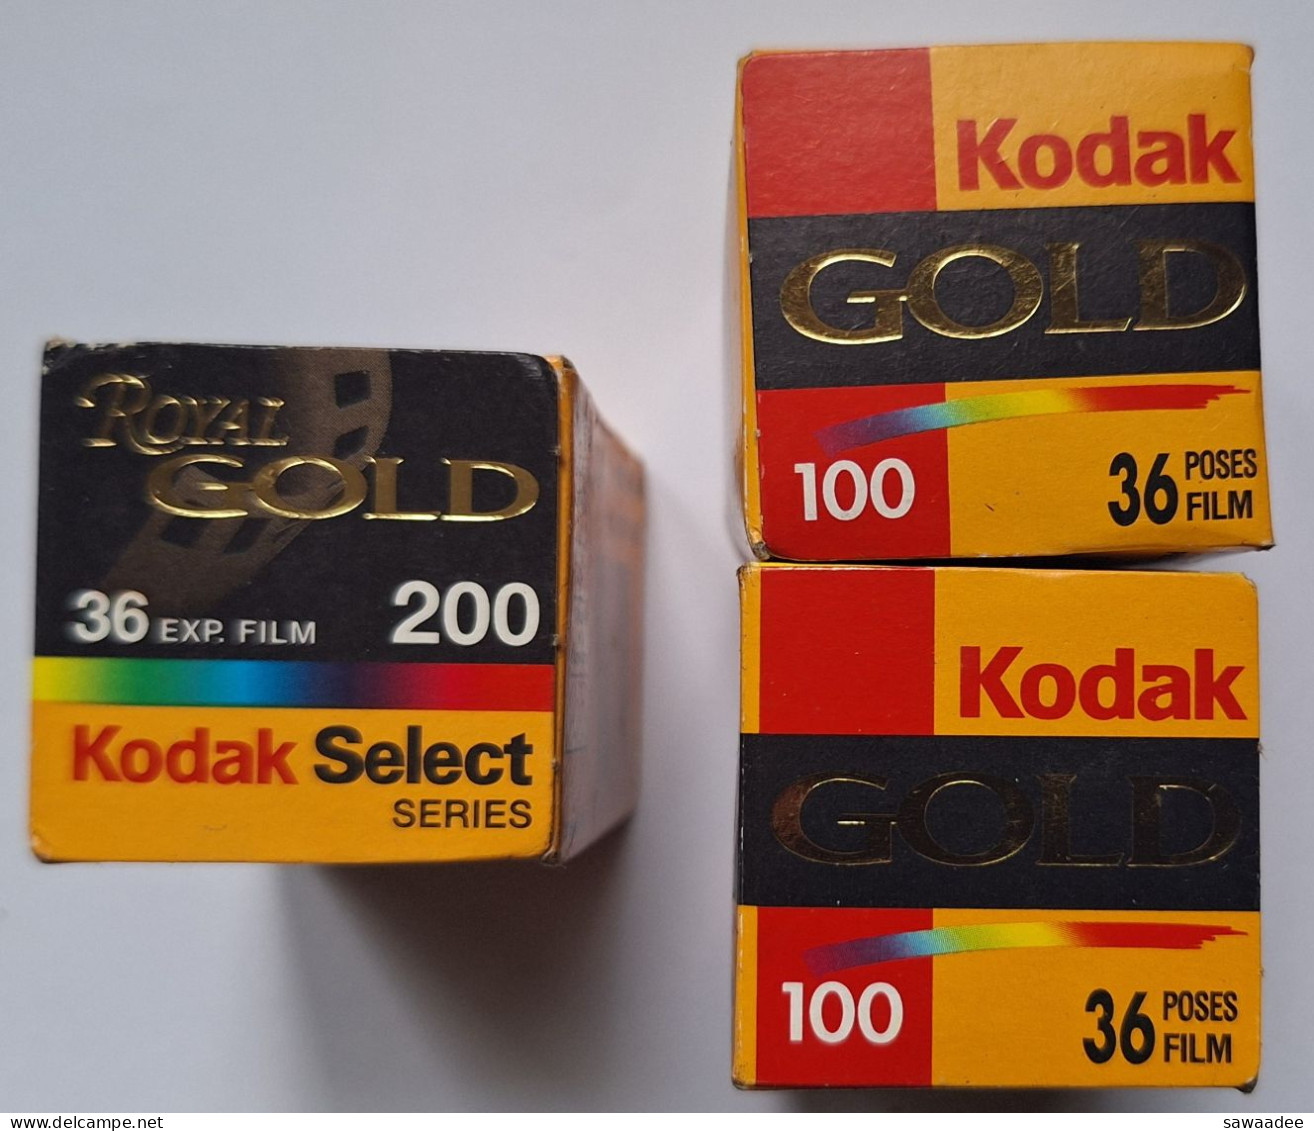 PHOTOGRAPHIE - LOT DE 3 BOITES DE PELLICULE KODAK - 1 ROYAL GOLD 200/36 - 2 GOLD 100/36 - ANNEE 2000 - VIERGES - 35mm -16mm - 9,5+8+S8mm Film Rolls